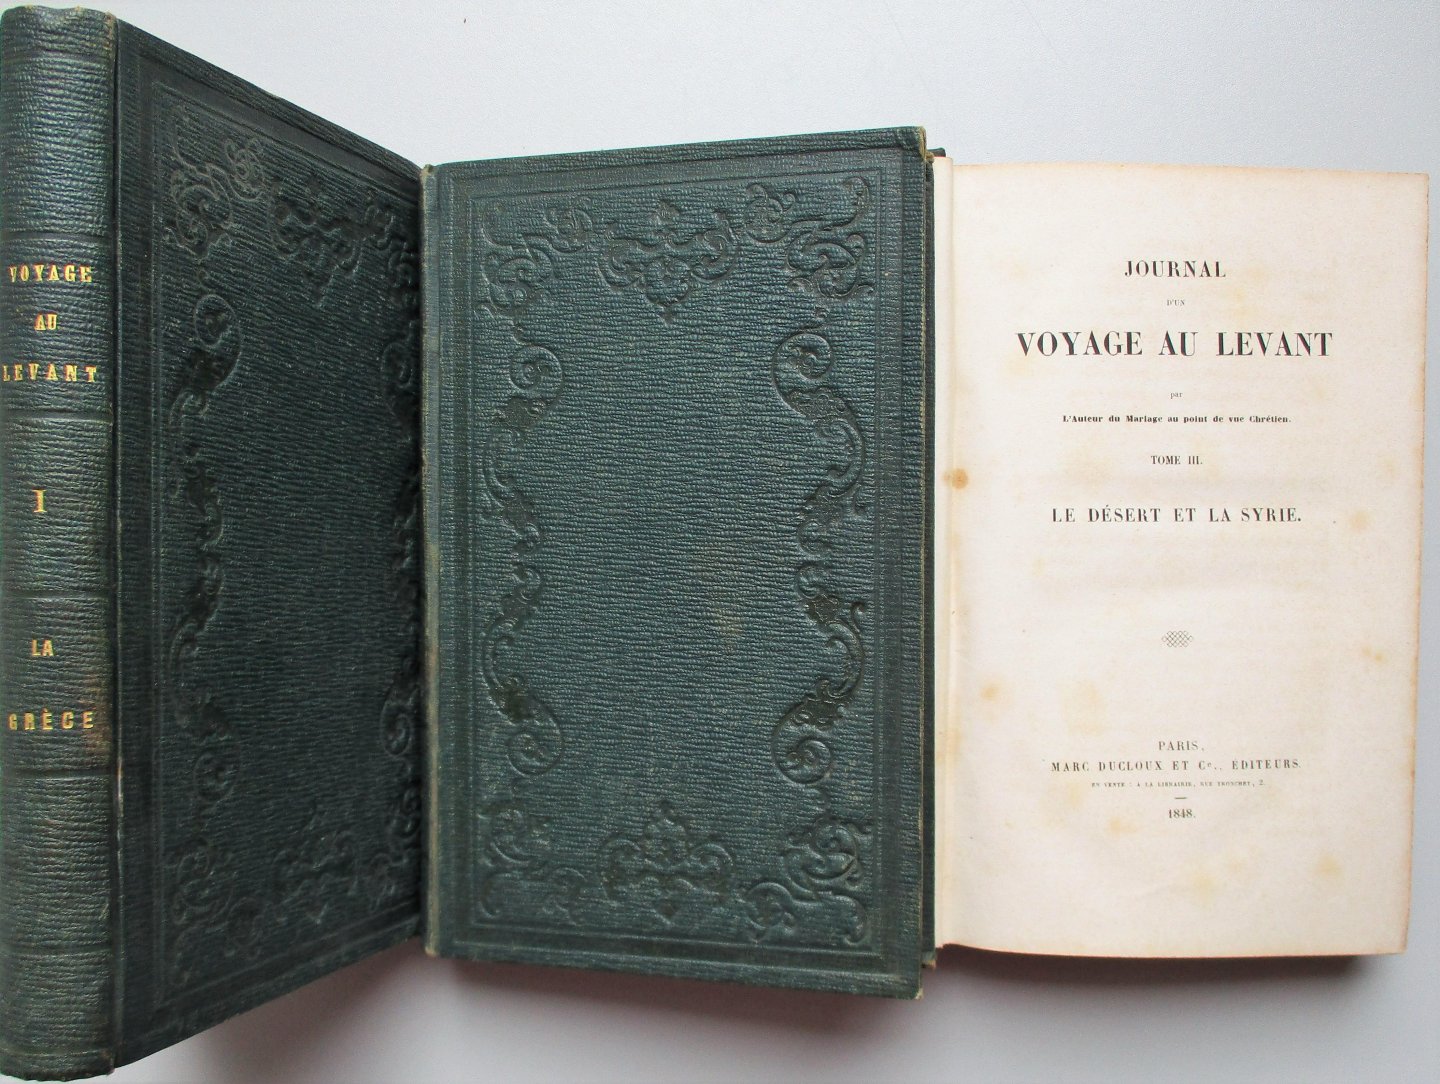 No name (Gasparin, V. de) - Journal d'un Voyage au Levant 3 vols complete